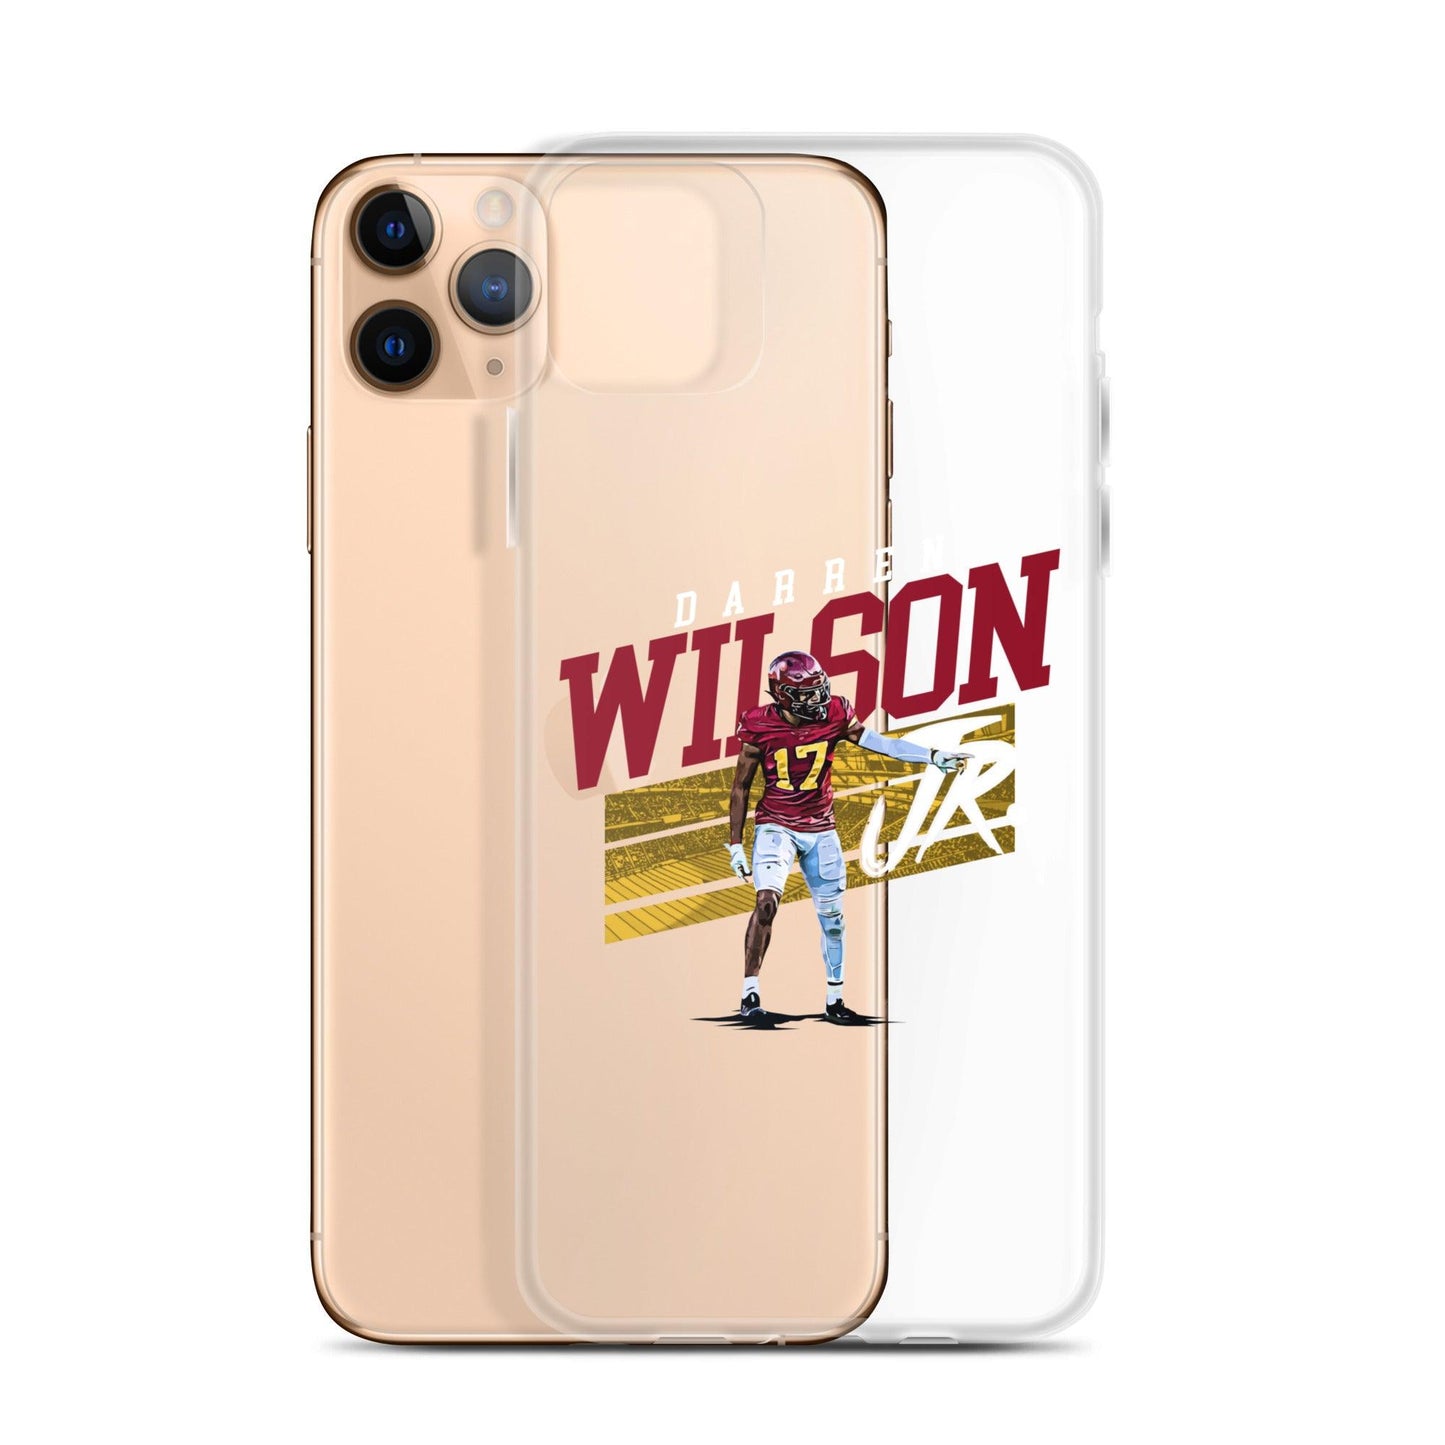 Darren Wilson Jr. "Gameday" iPhone Case - Fan Arch